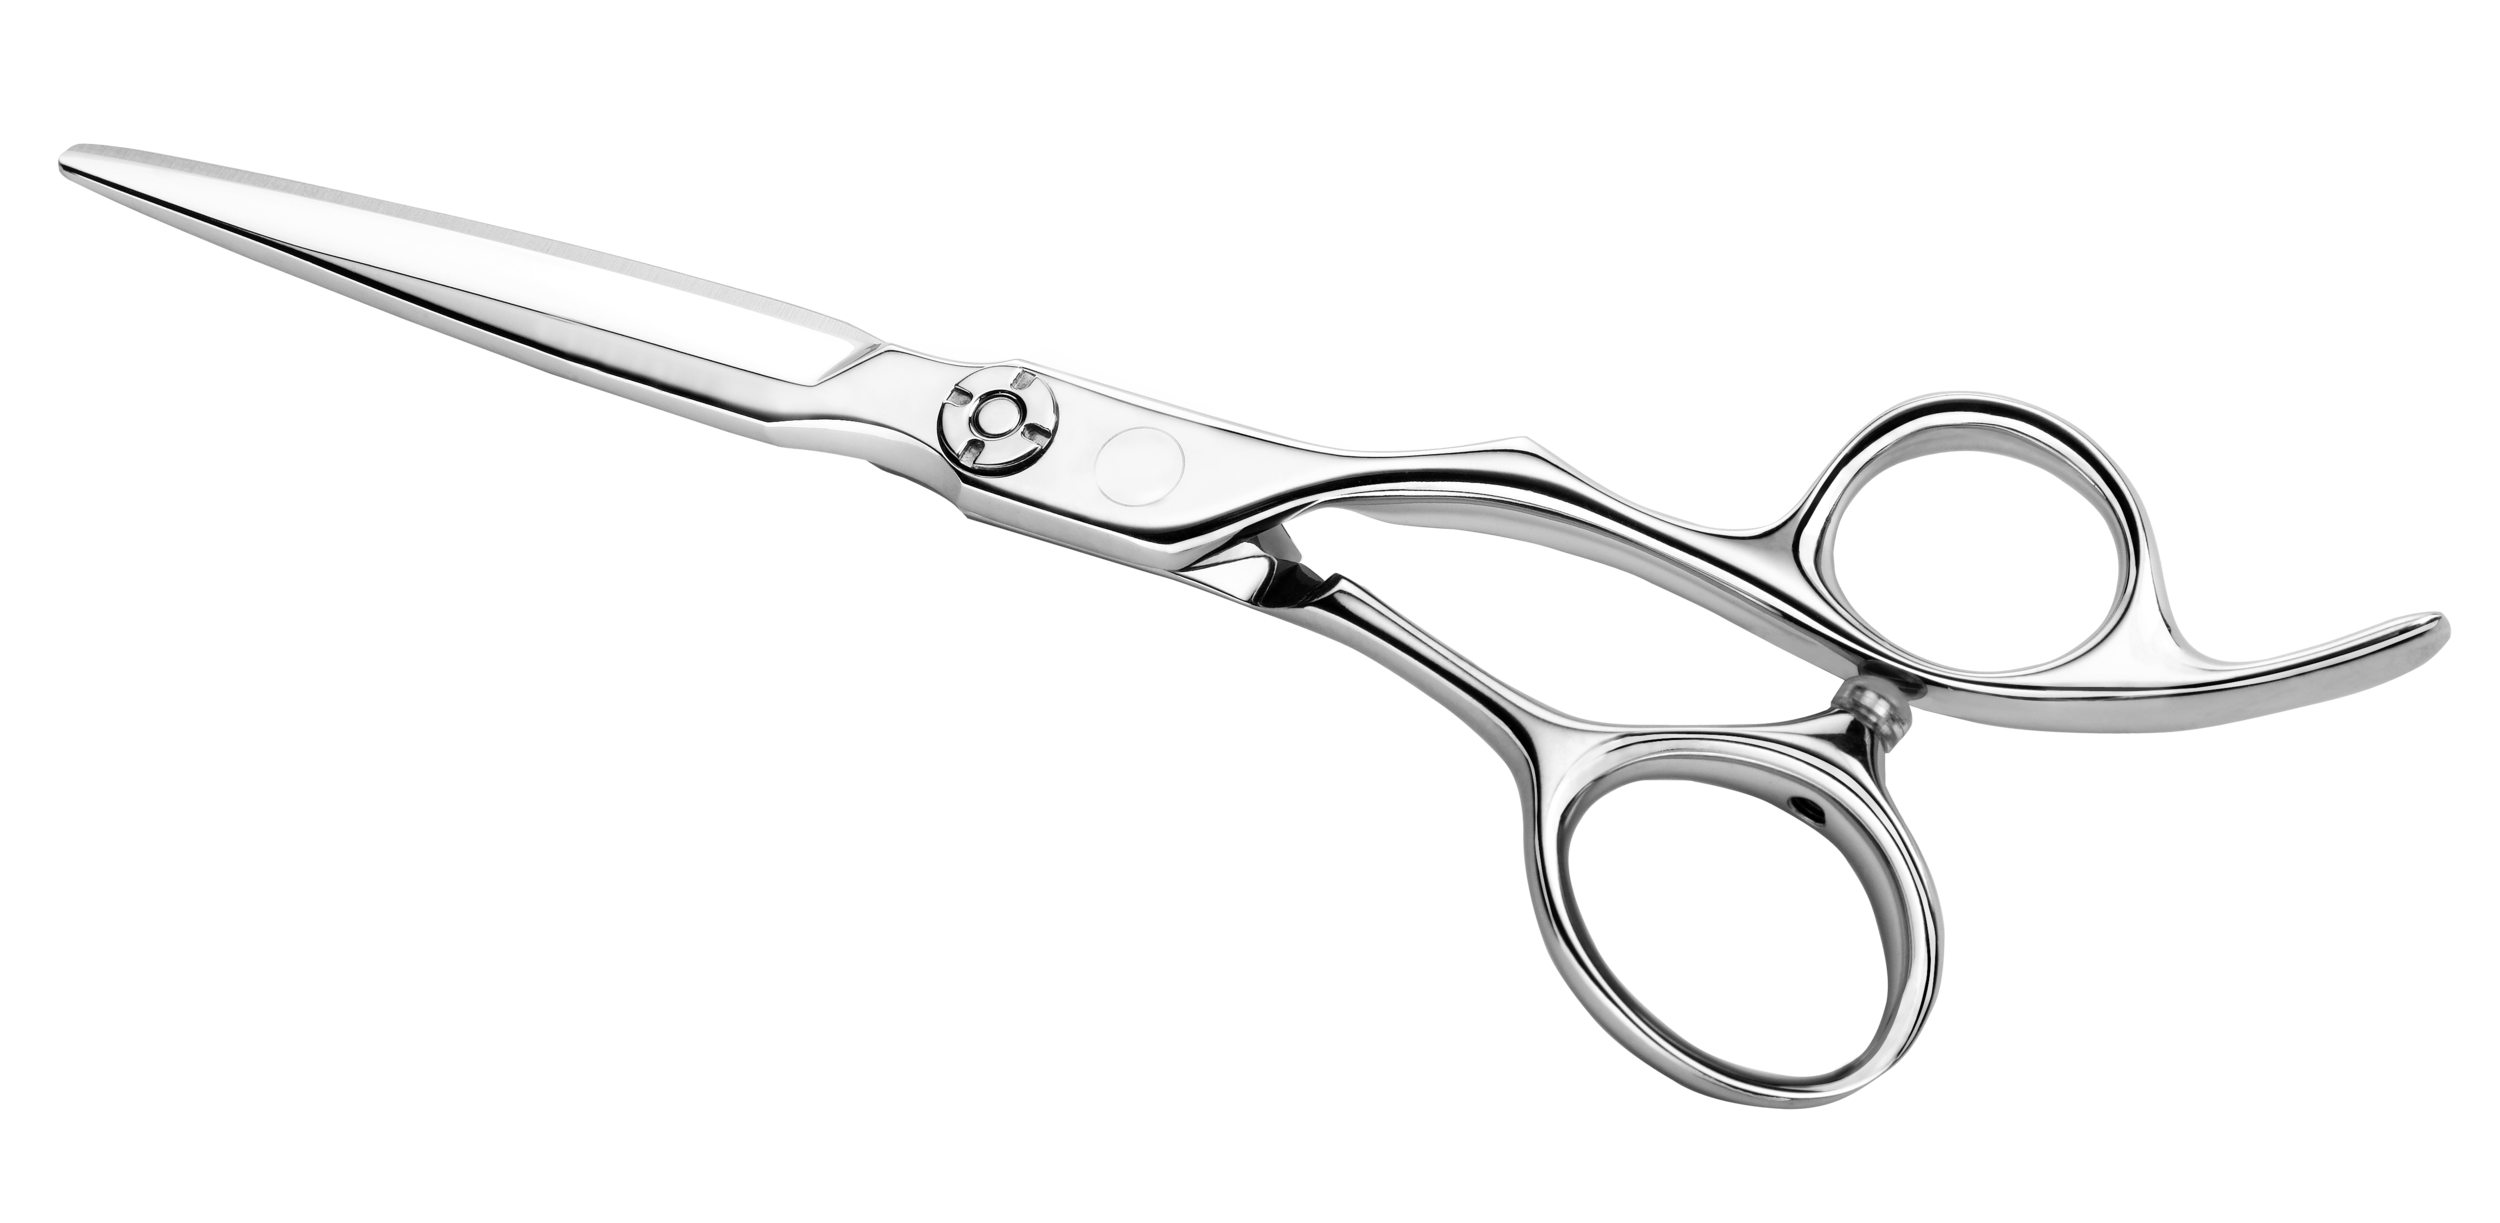 shears clipart hairdressing scissors